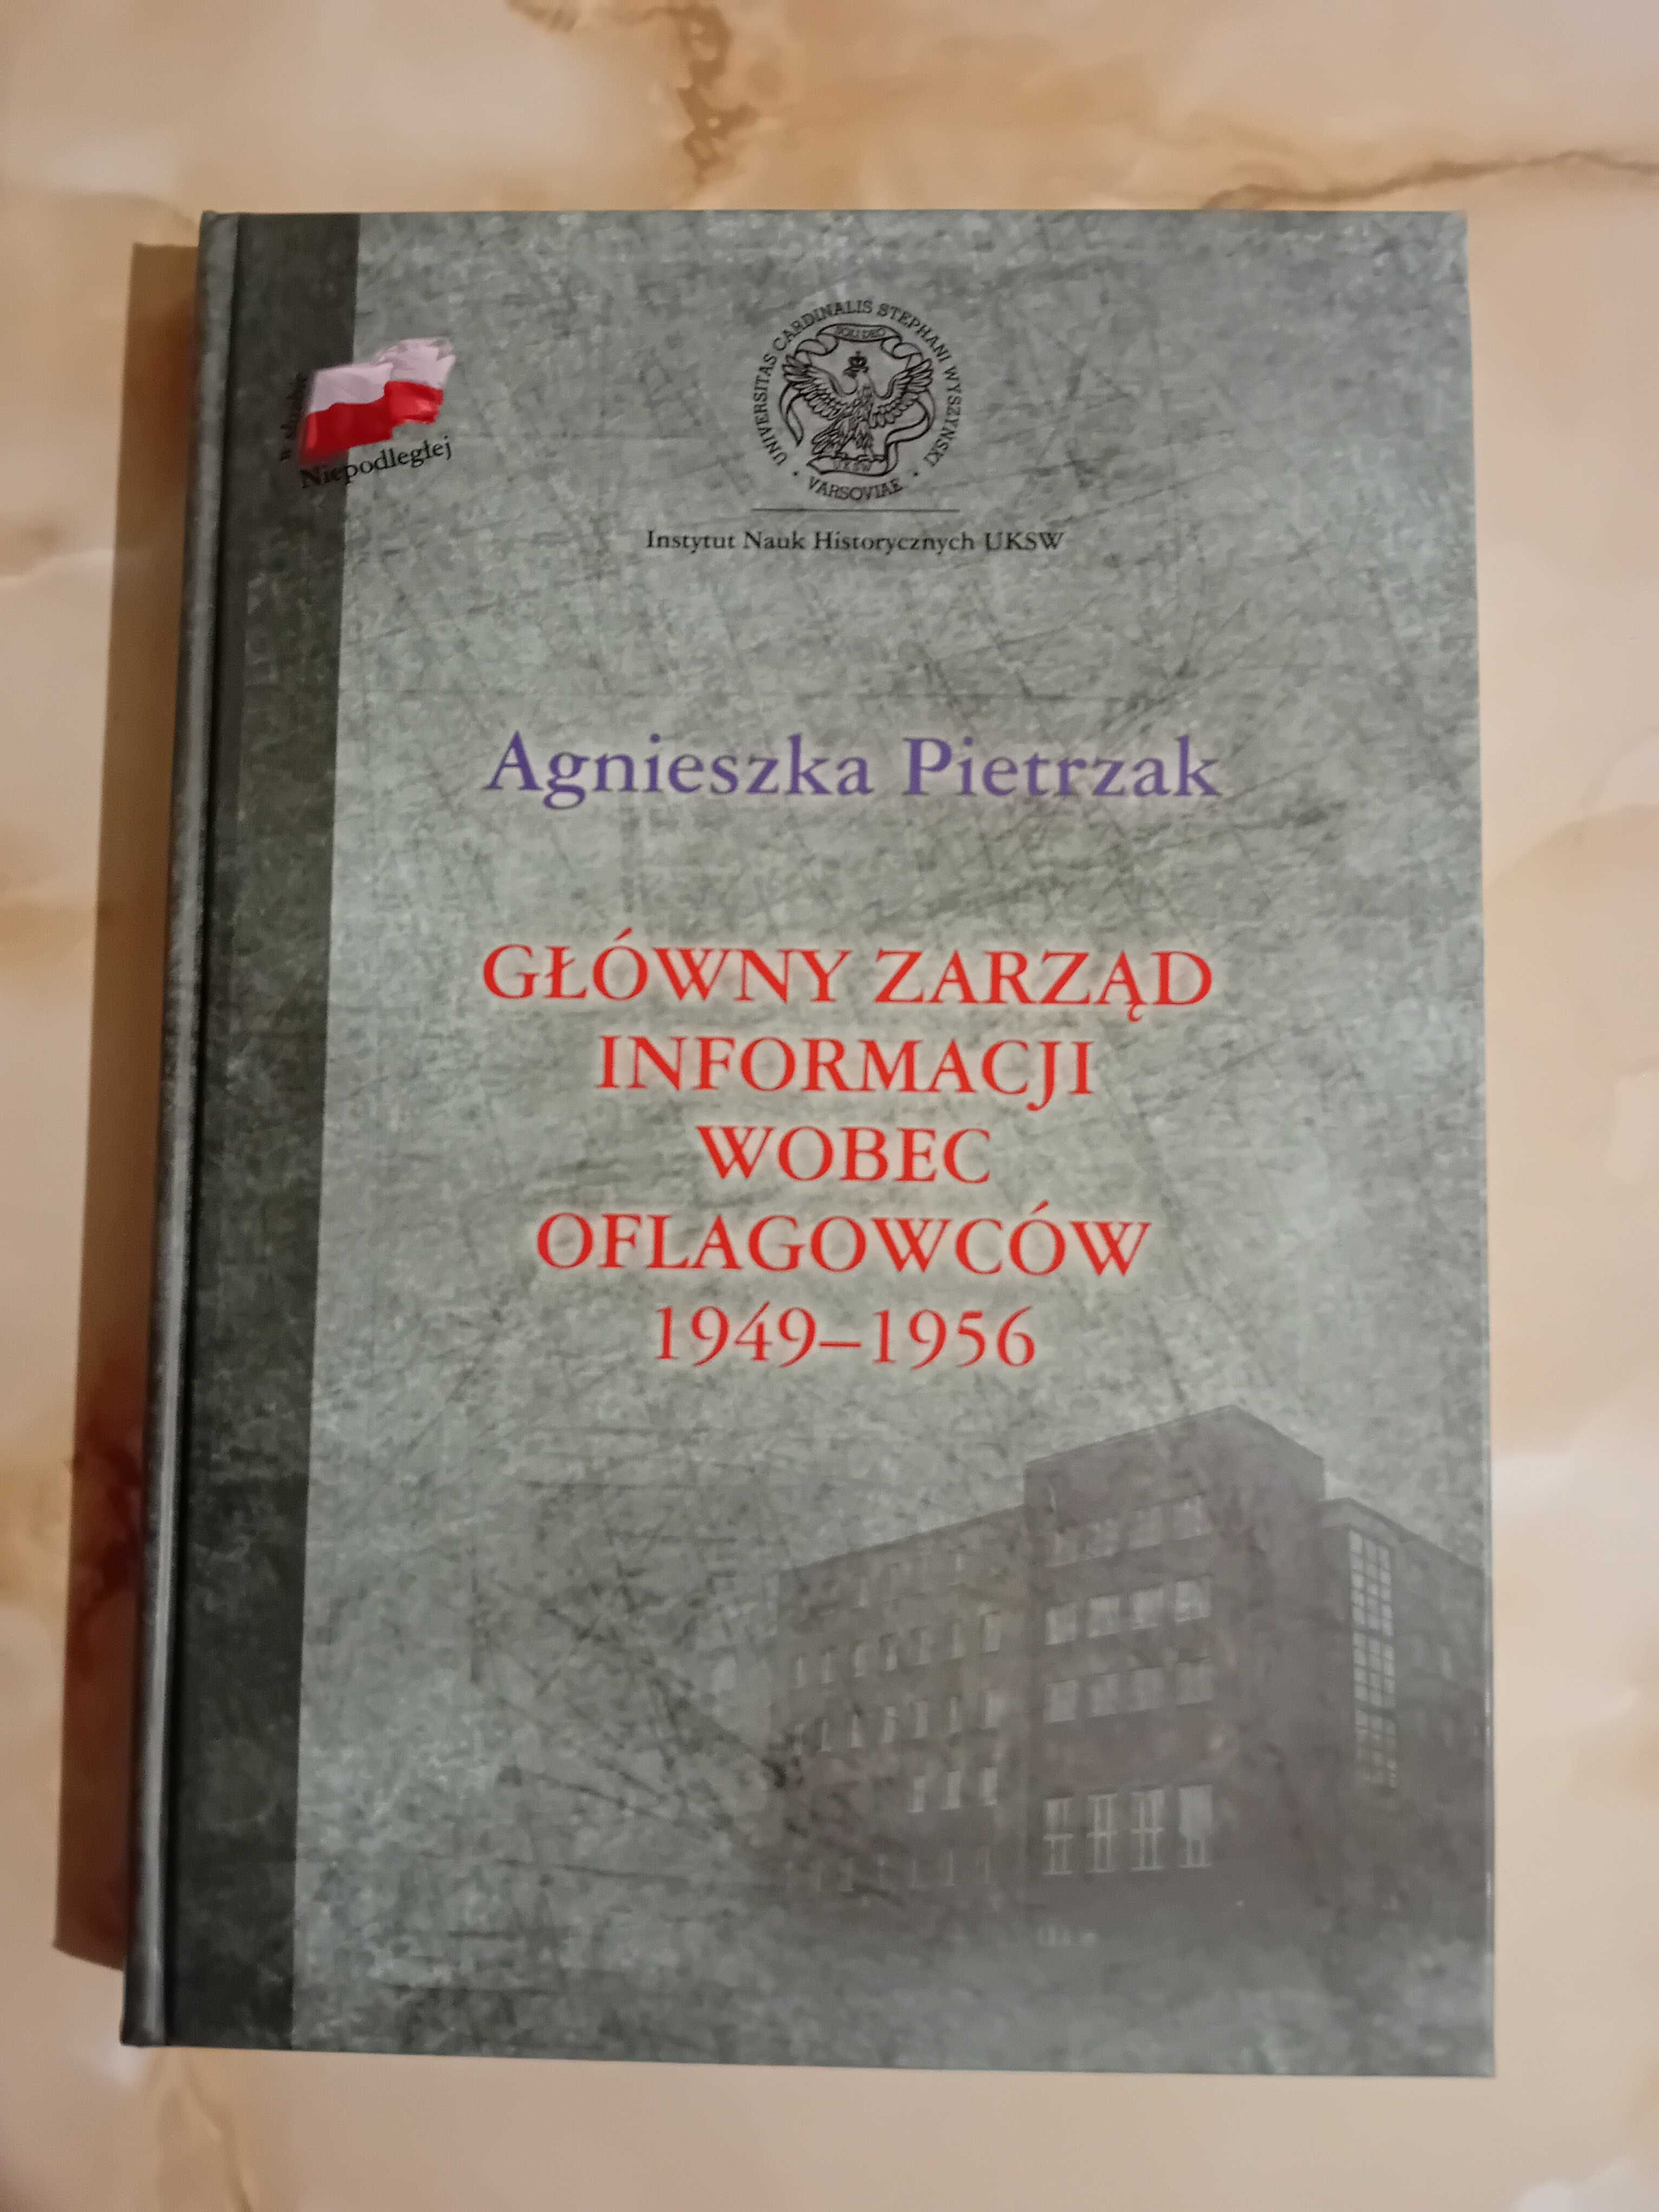 Główny Zarząd Informacji wobec oflagowców 1949 - 1956 Pietrzak